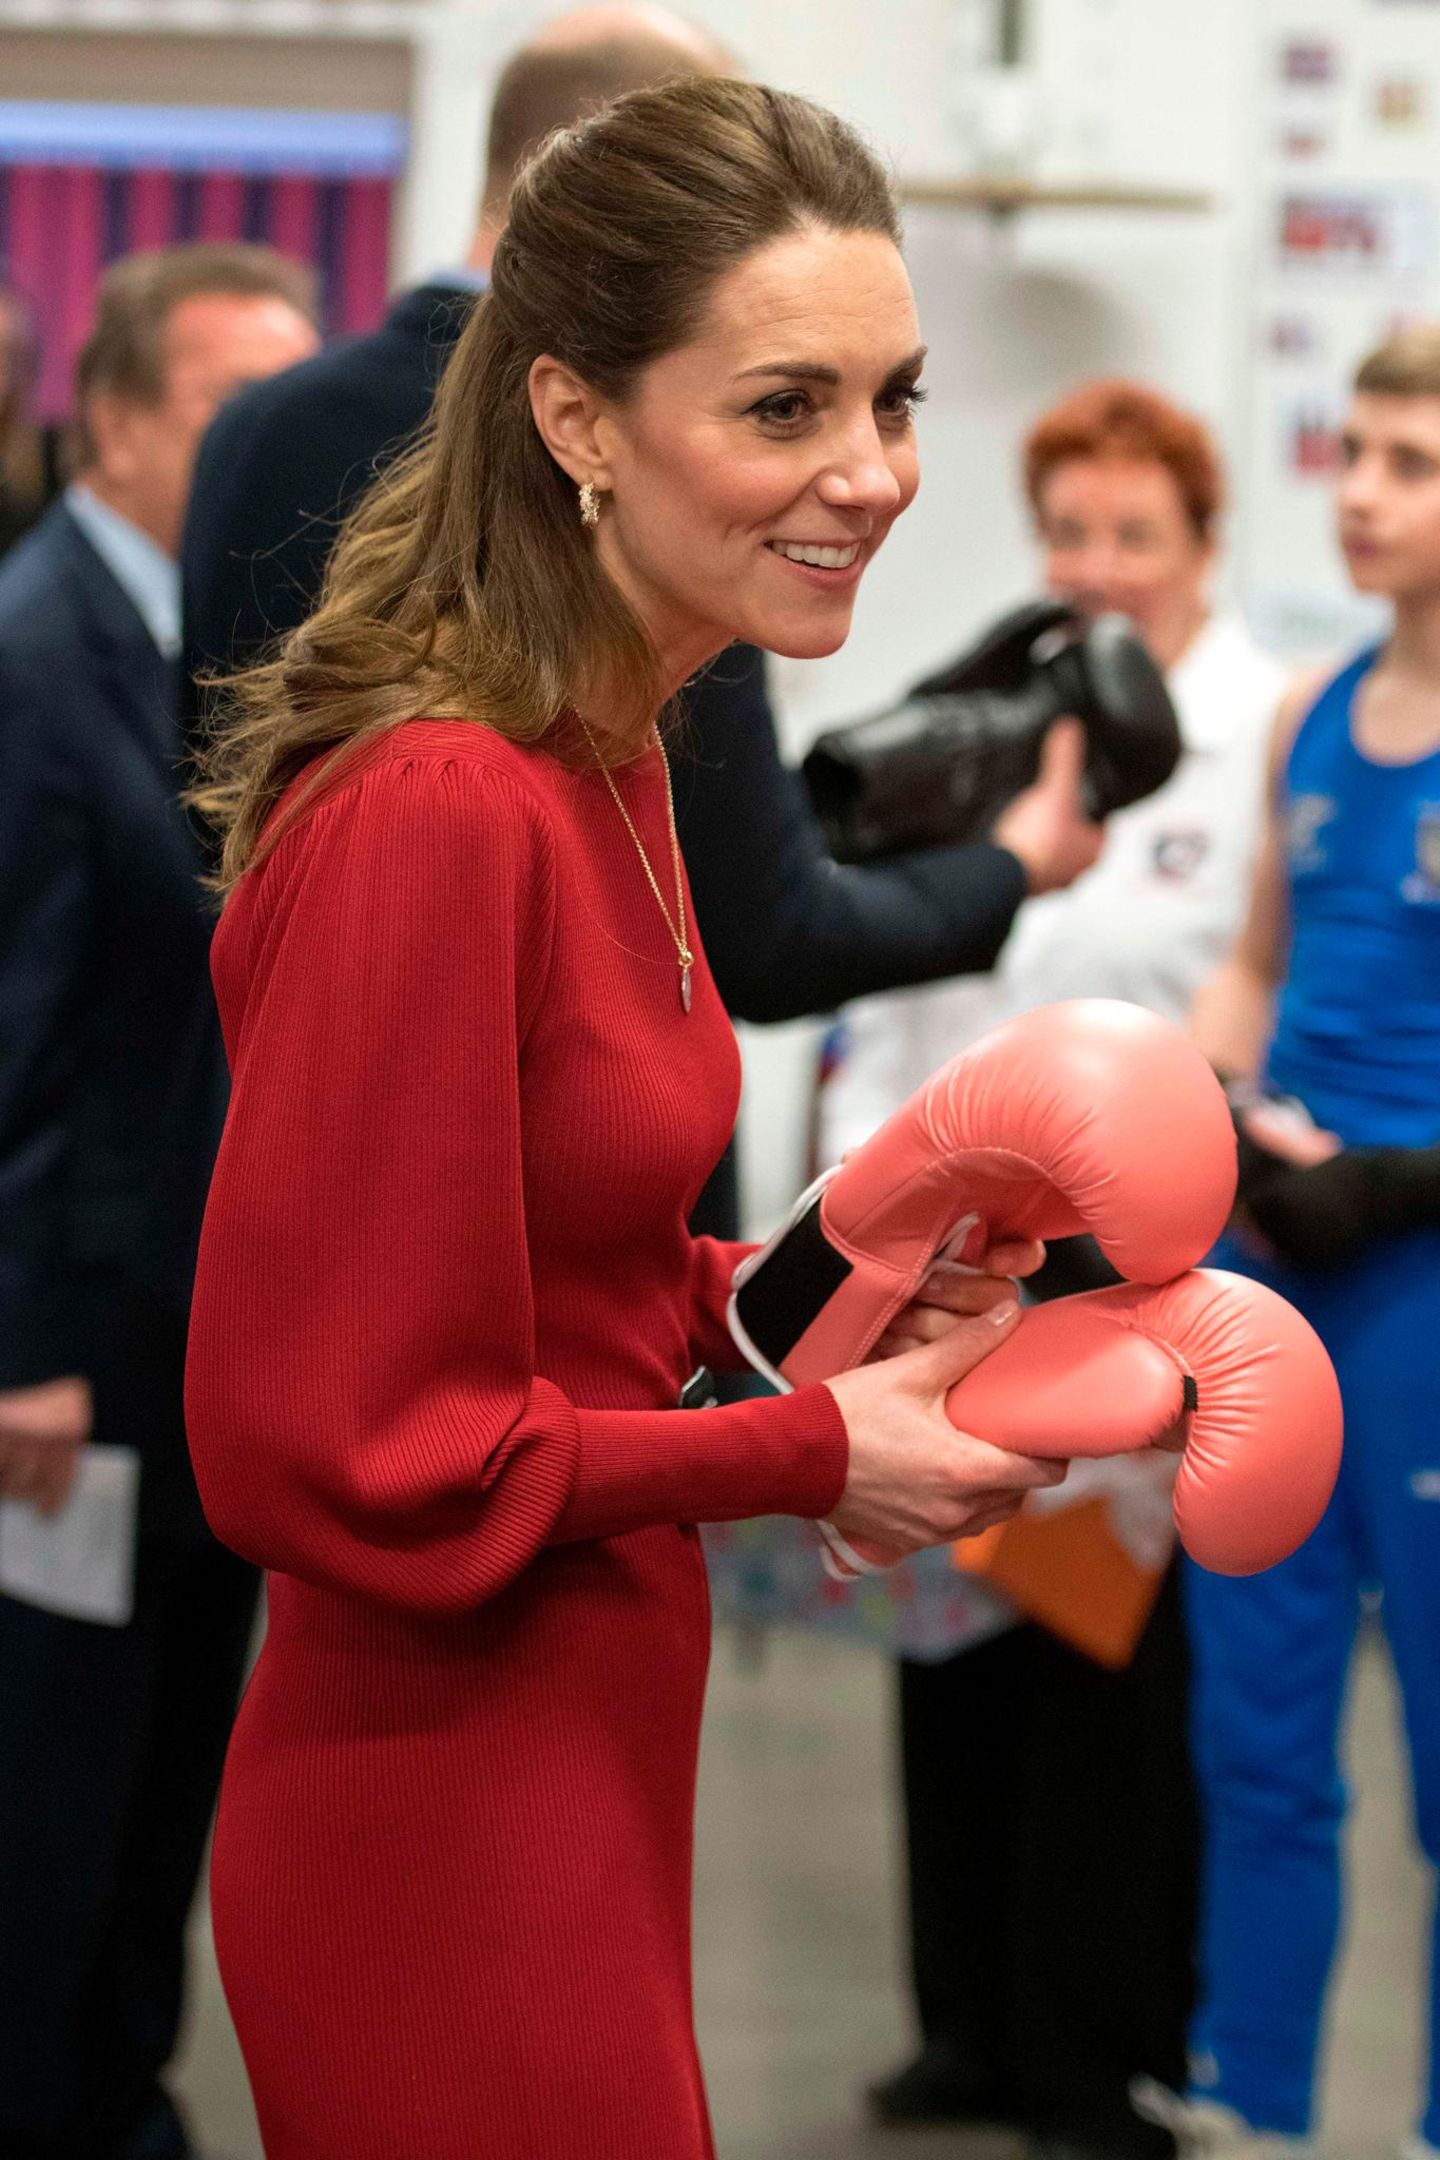 Royals, die günstige Kleidung tragen: Herzogin Kate im roten Zara-Kleid